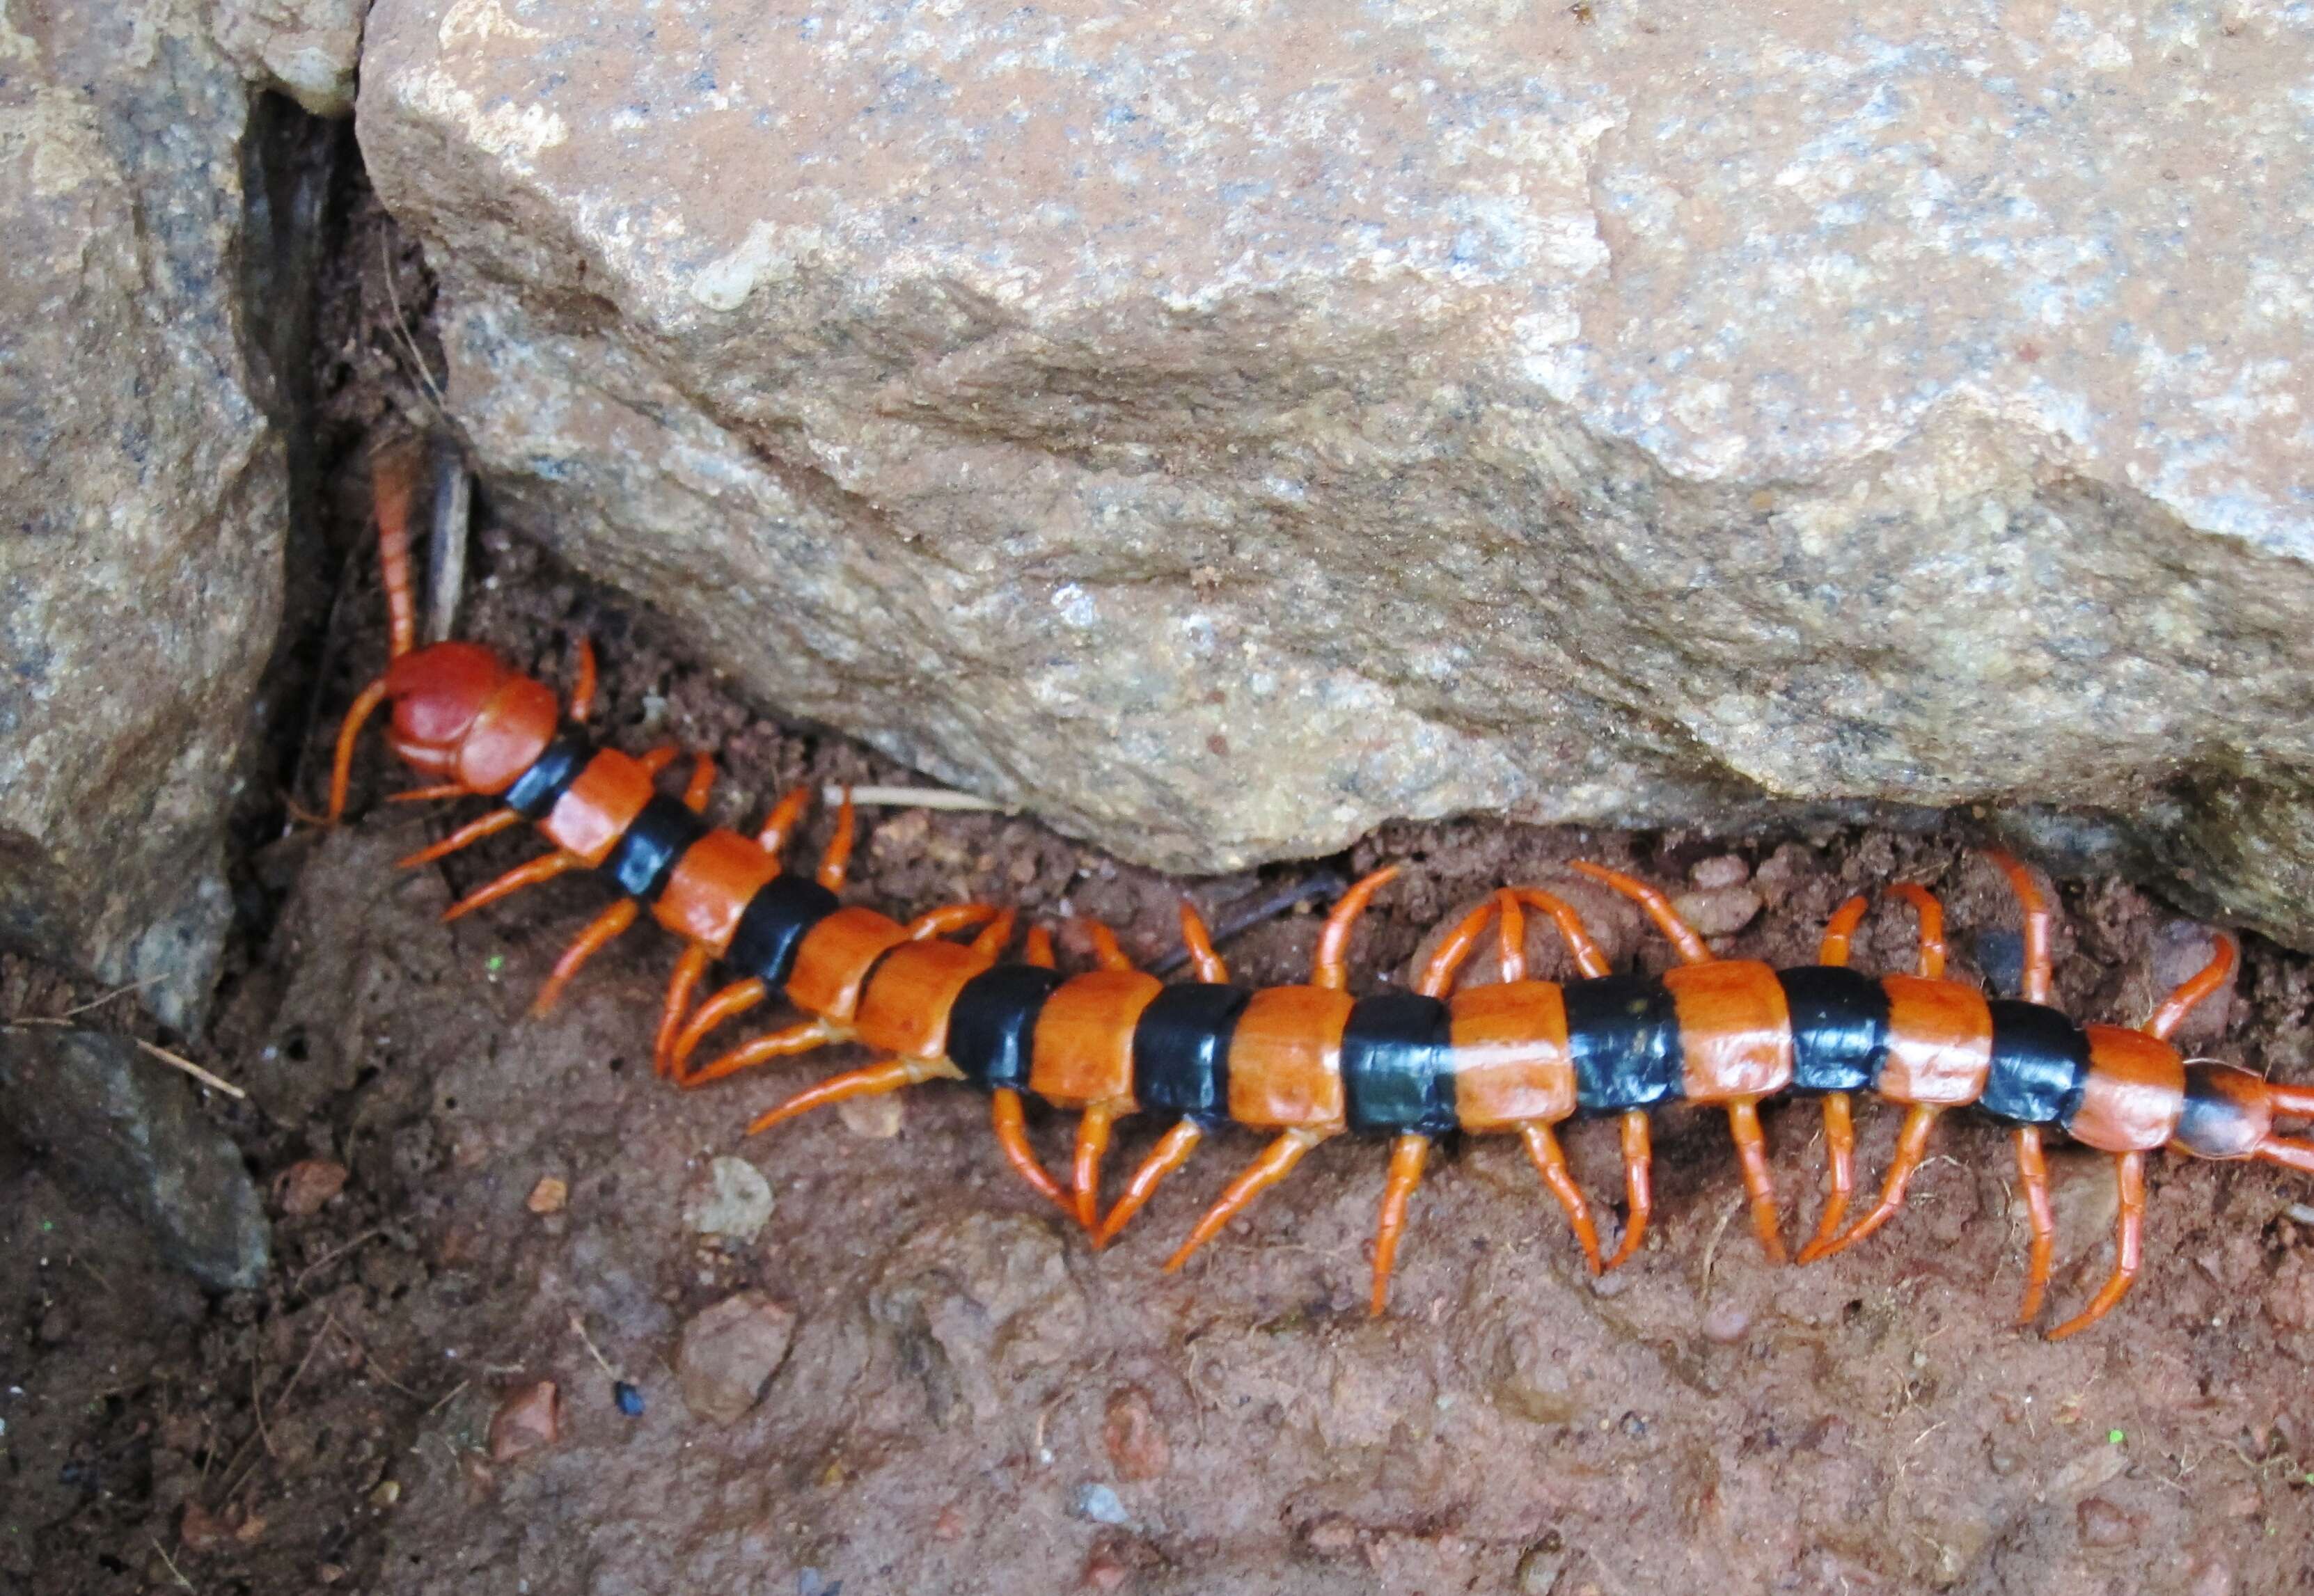 Image of Indian tiger centipede